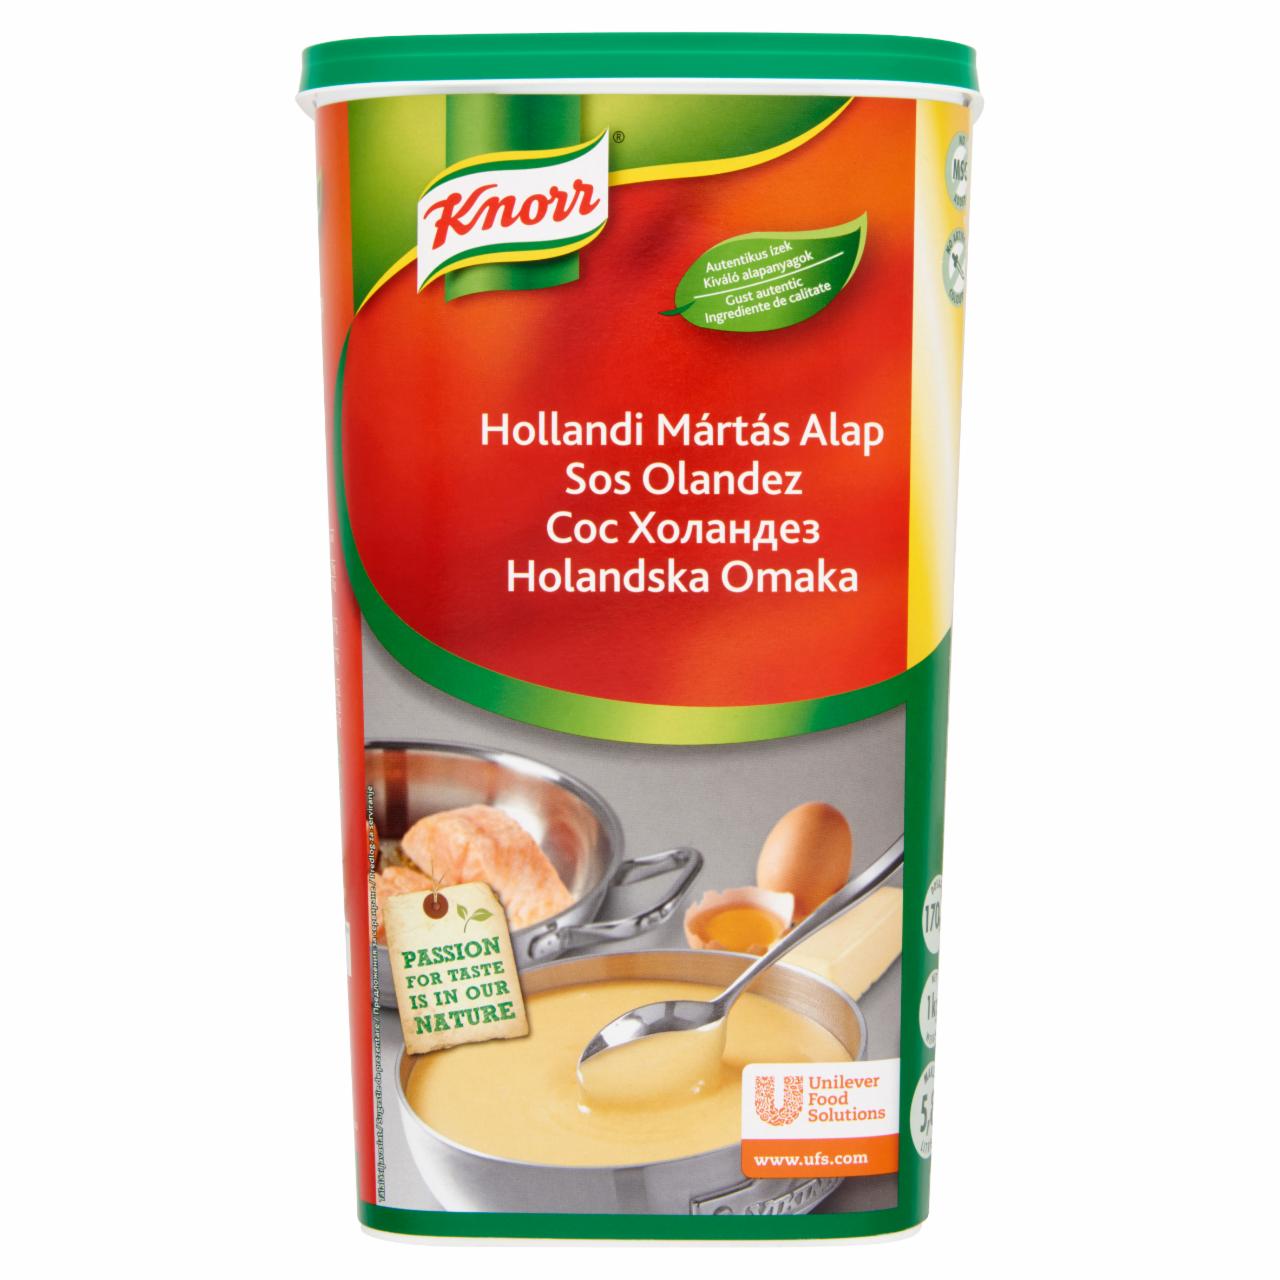 Képek - Knorr Hollandi mártás alap 1 kg